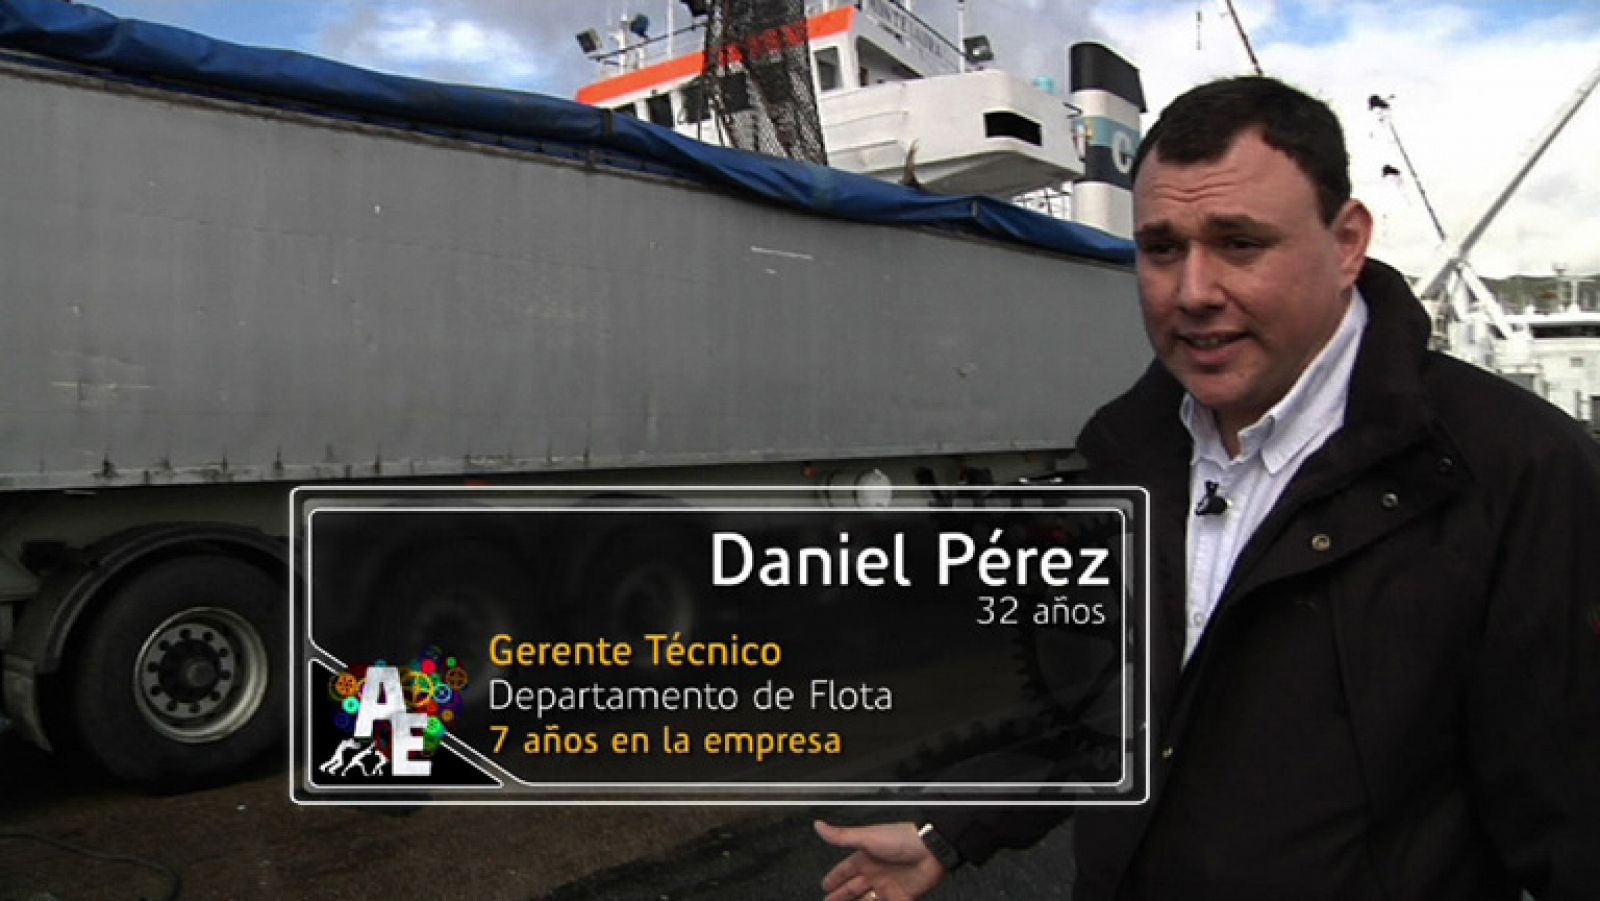 Daniel Pérez (32 años), gerente técnico del departamento de flota